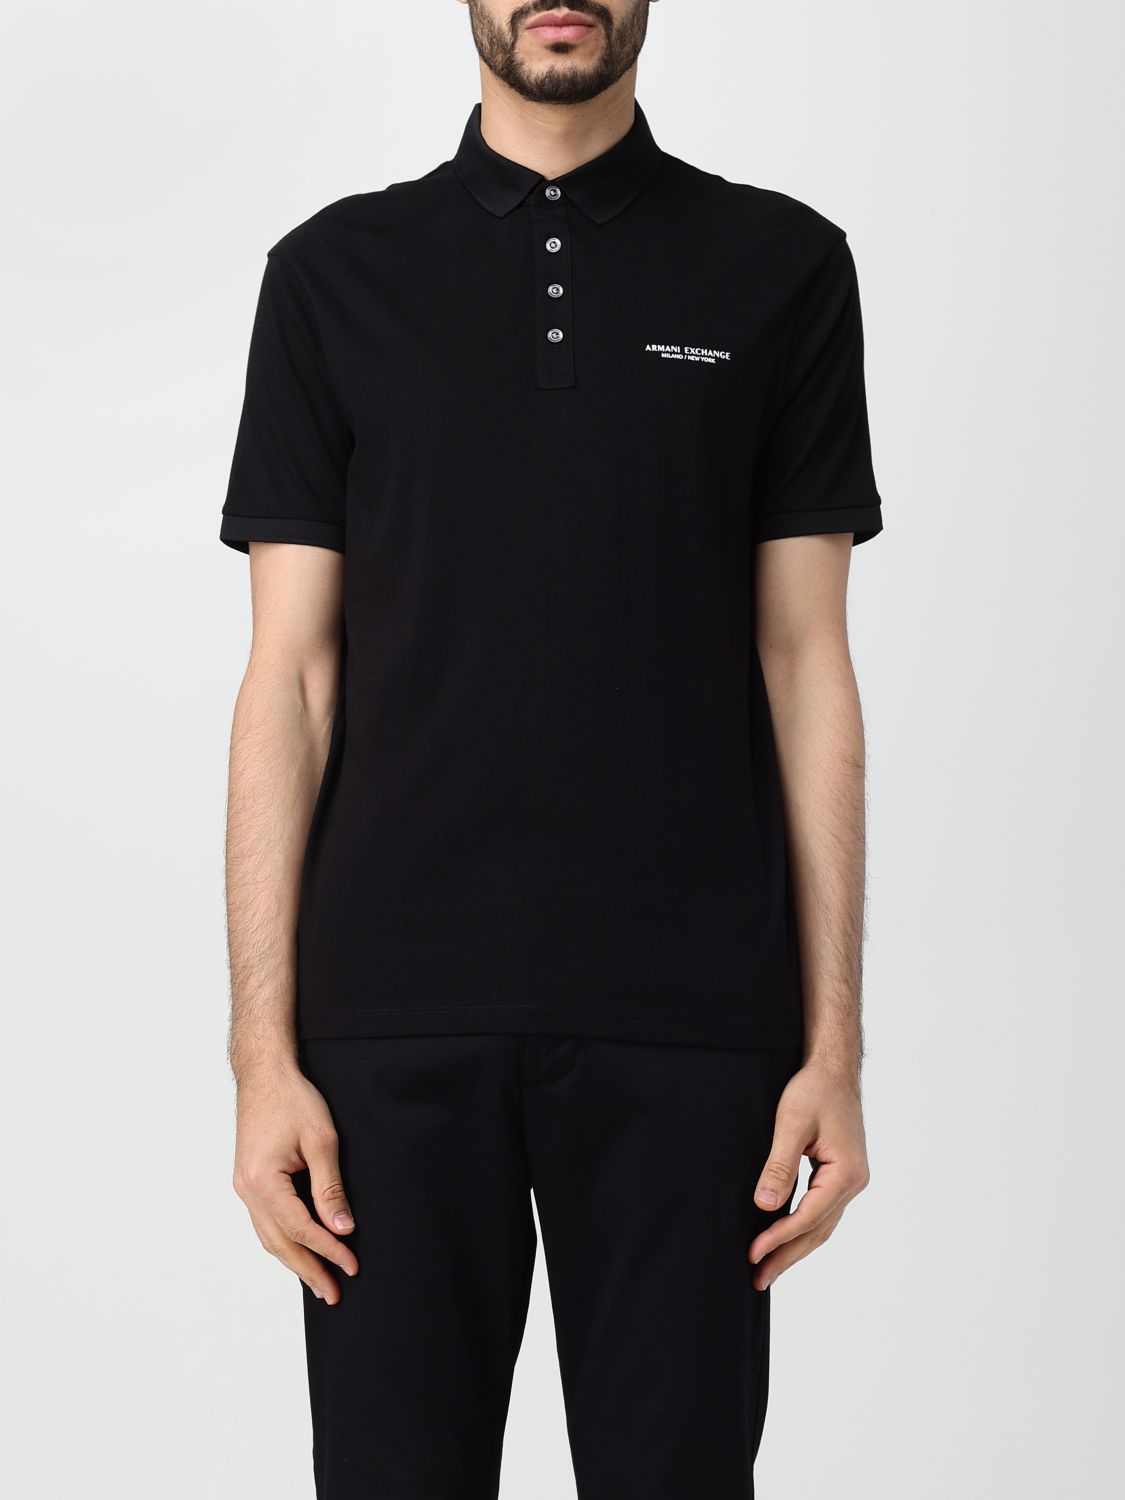 Armani Exchange Logo Polo T Shirt Black